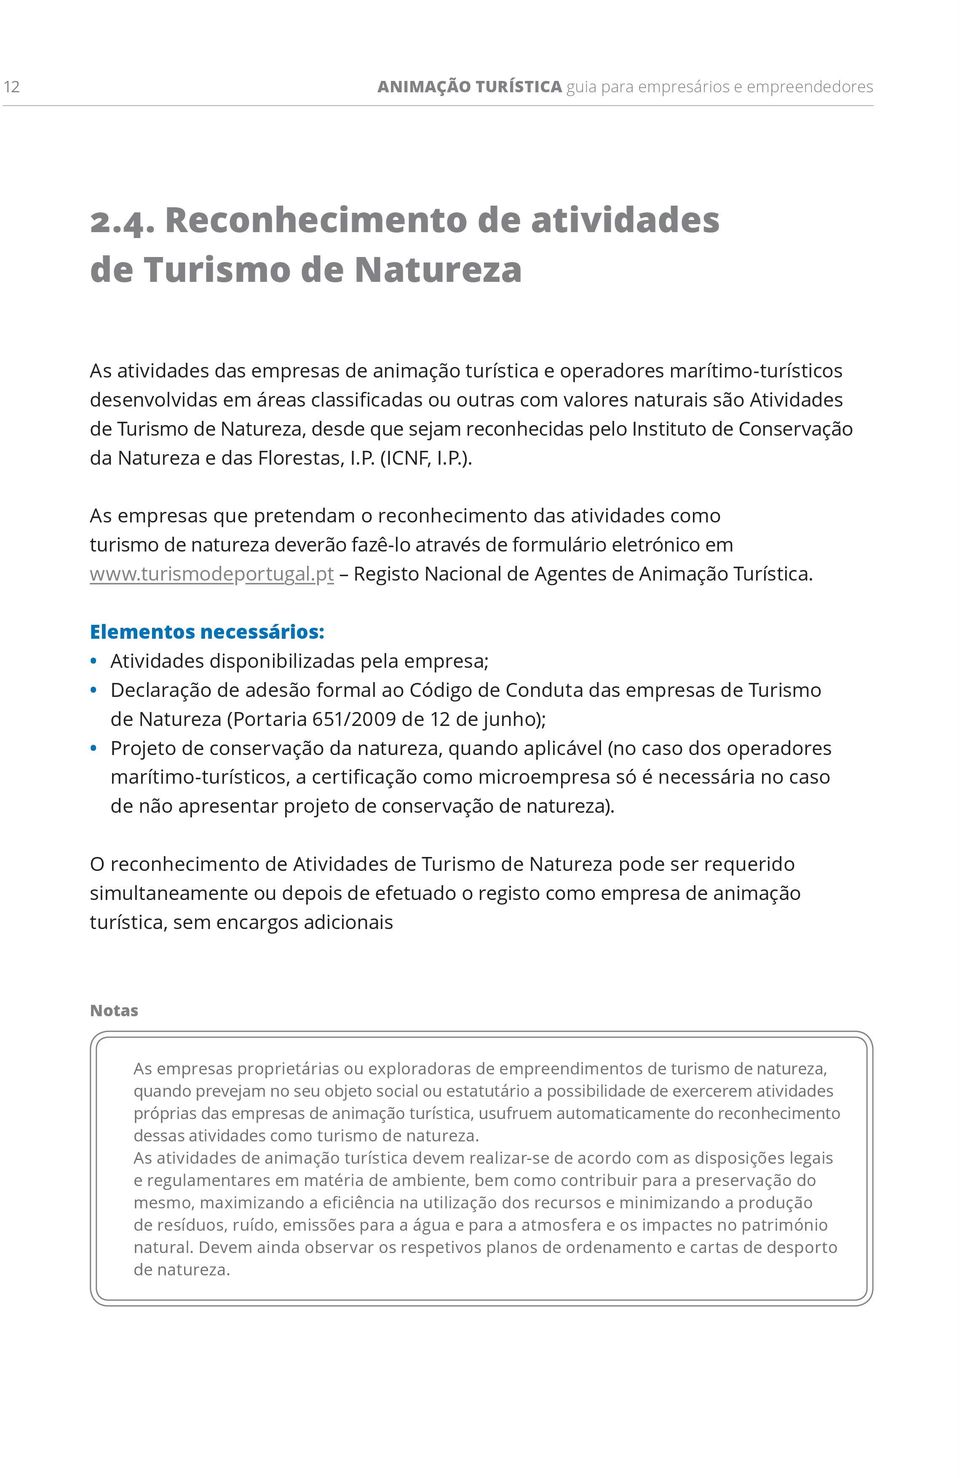 naturais são Atividades de Turismo de Natureza, desde que sejam reconhecidas pelo Instituto de Conservação da Natureza e das Florestas, I.P. (ICNF, I.P.).